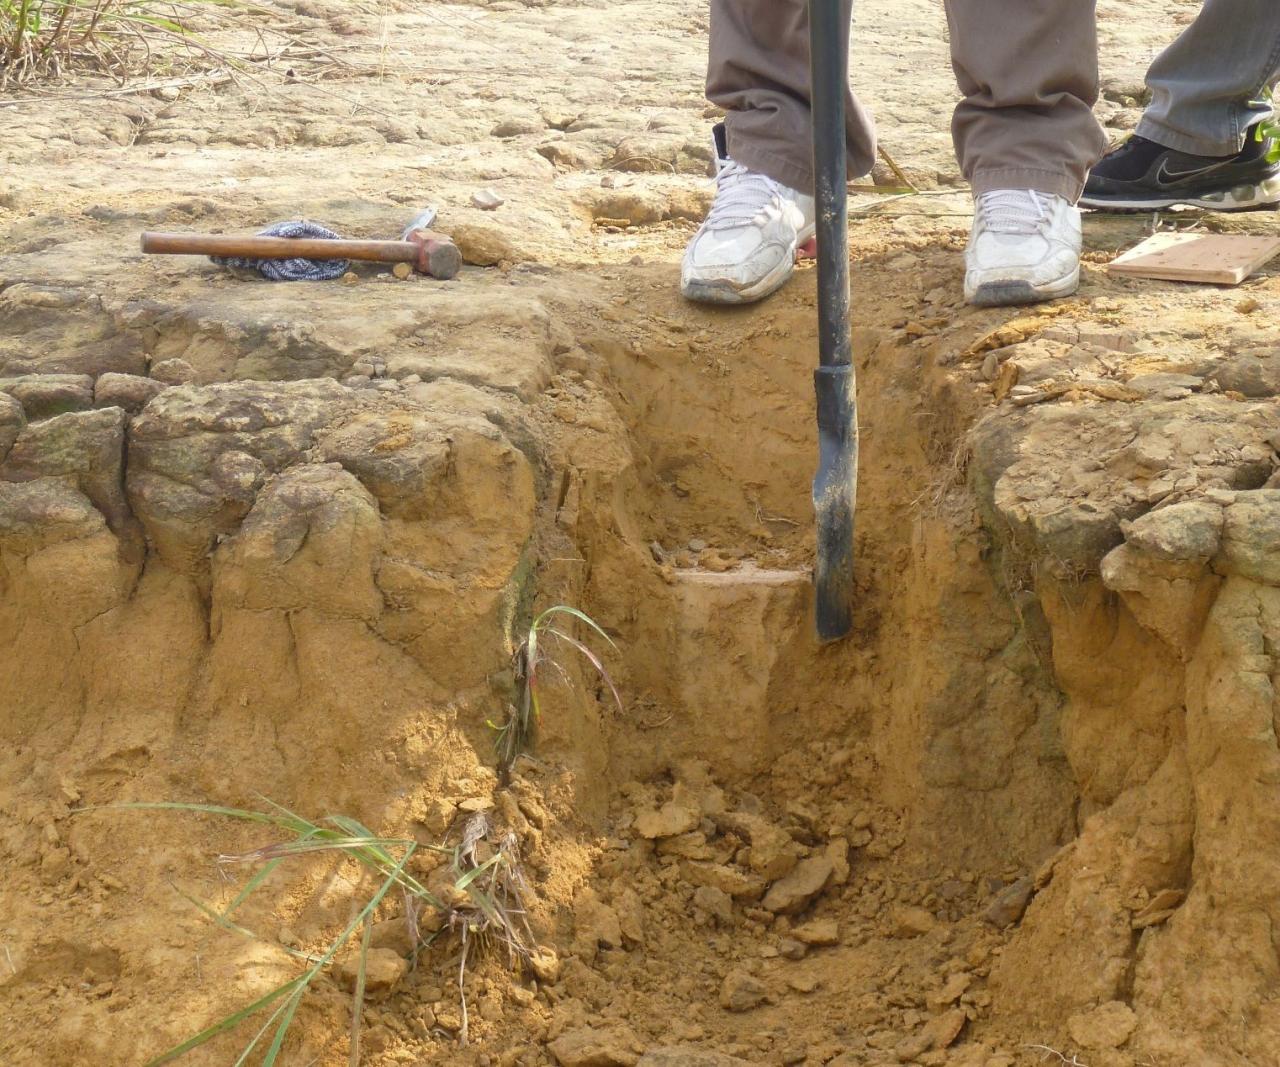 Soil investigation phases involved civilblog